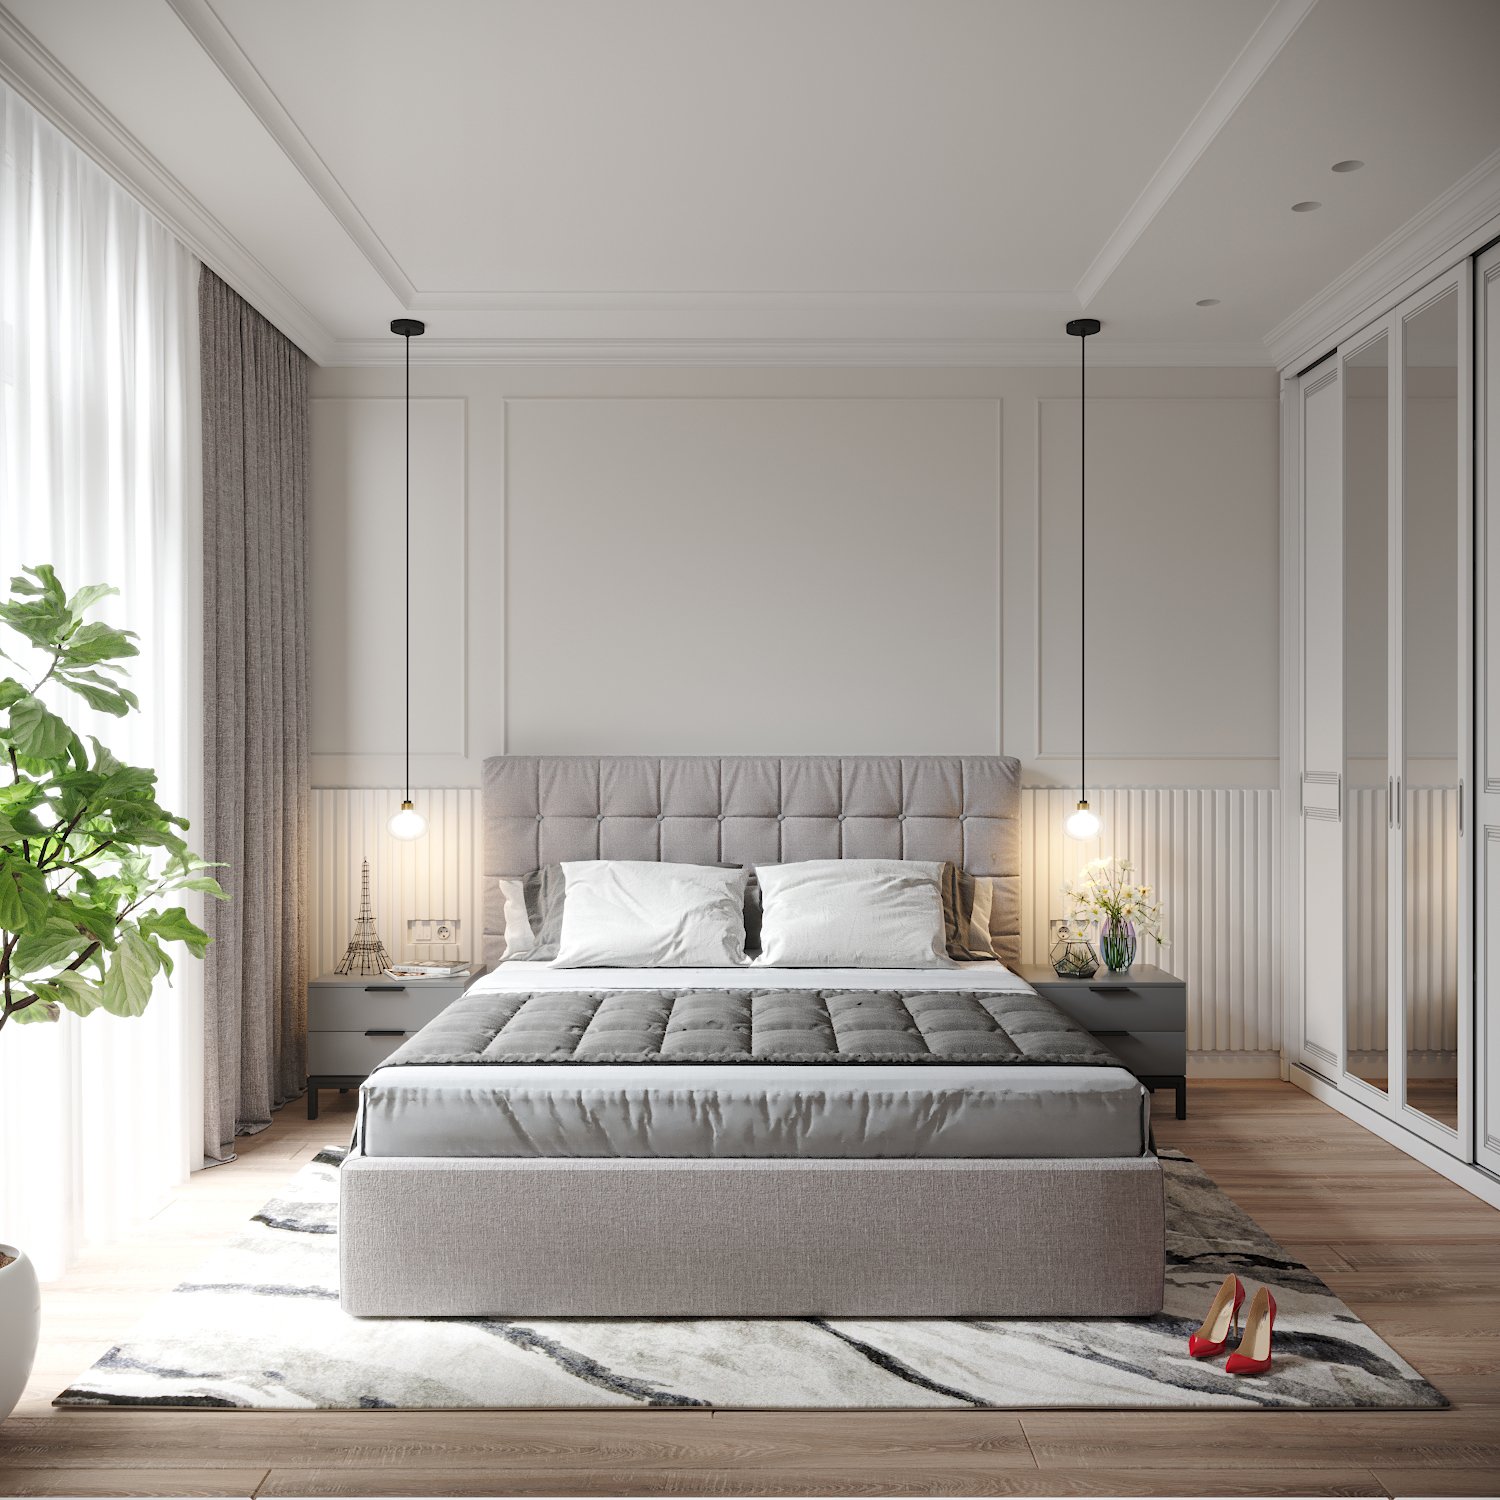 Дизайн спальни в квартире - 58 фото